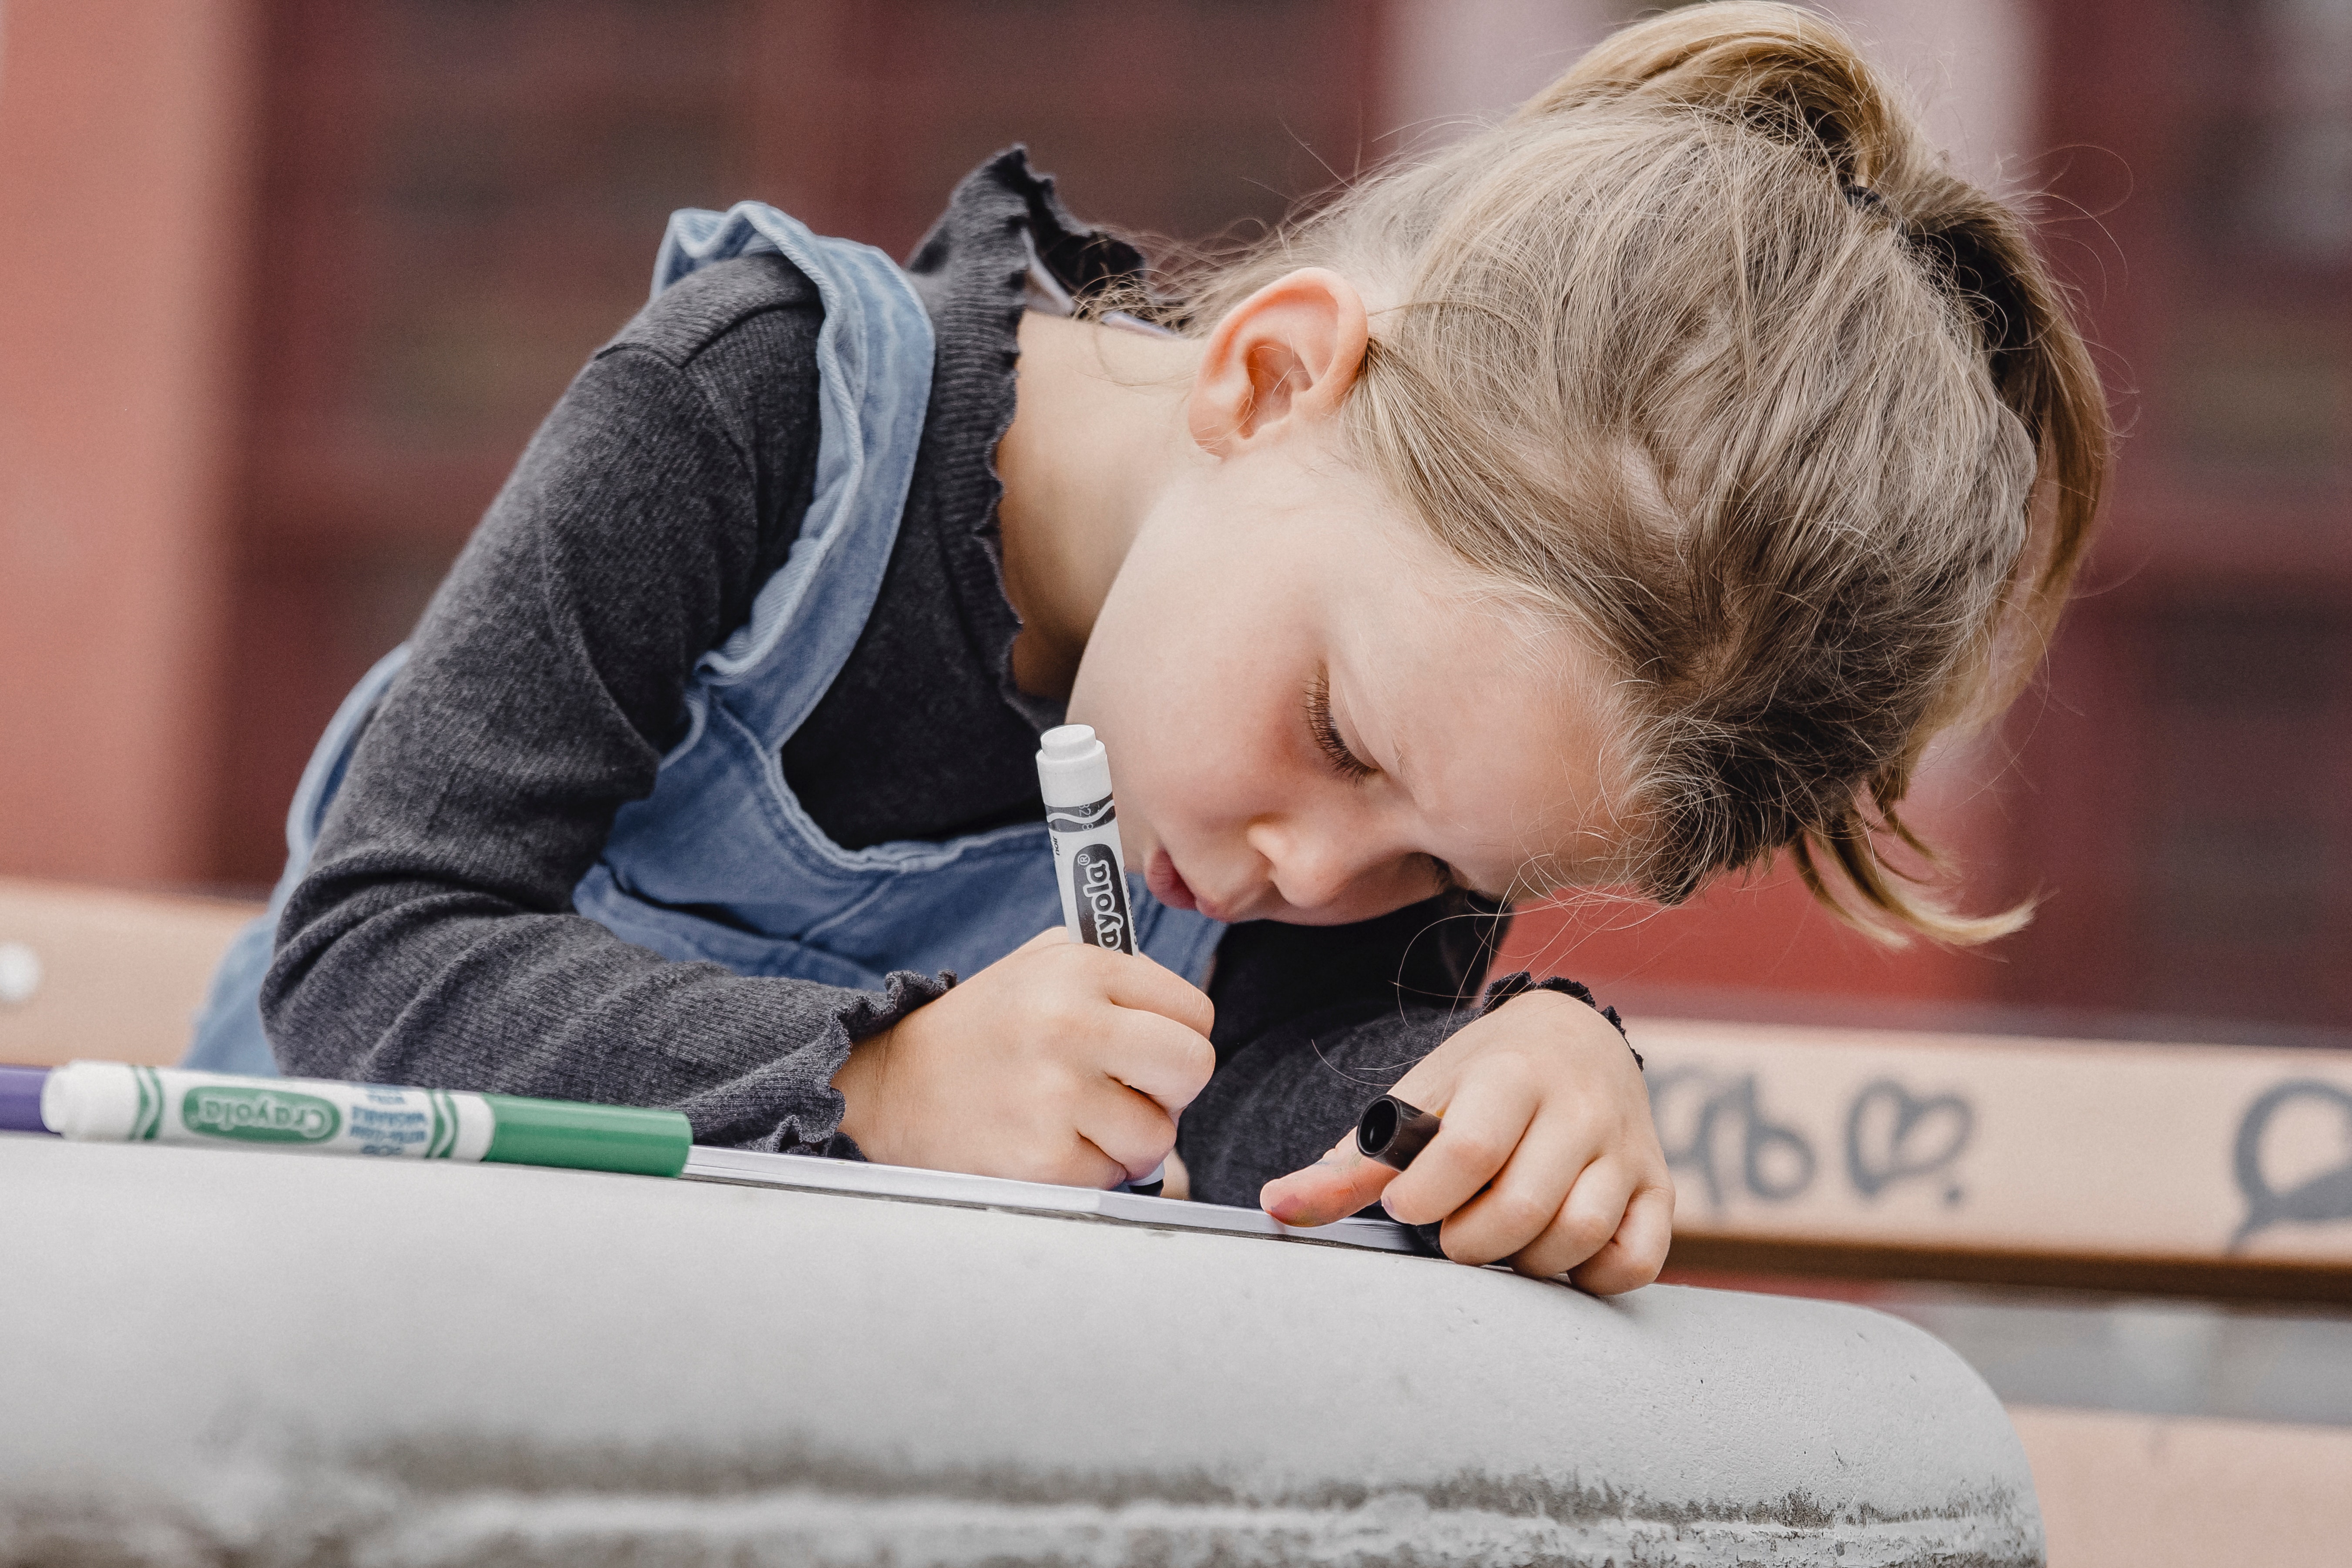  17 Activități distractive și educaționale pentru copii cu marker de puncte